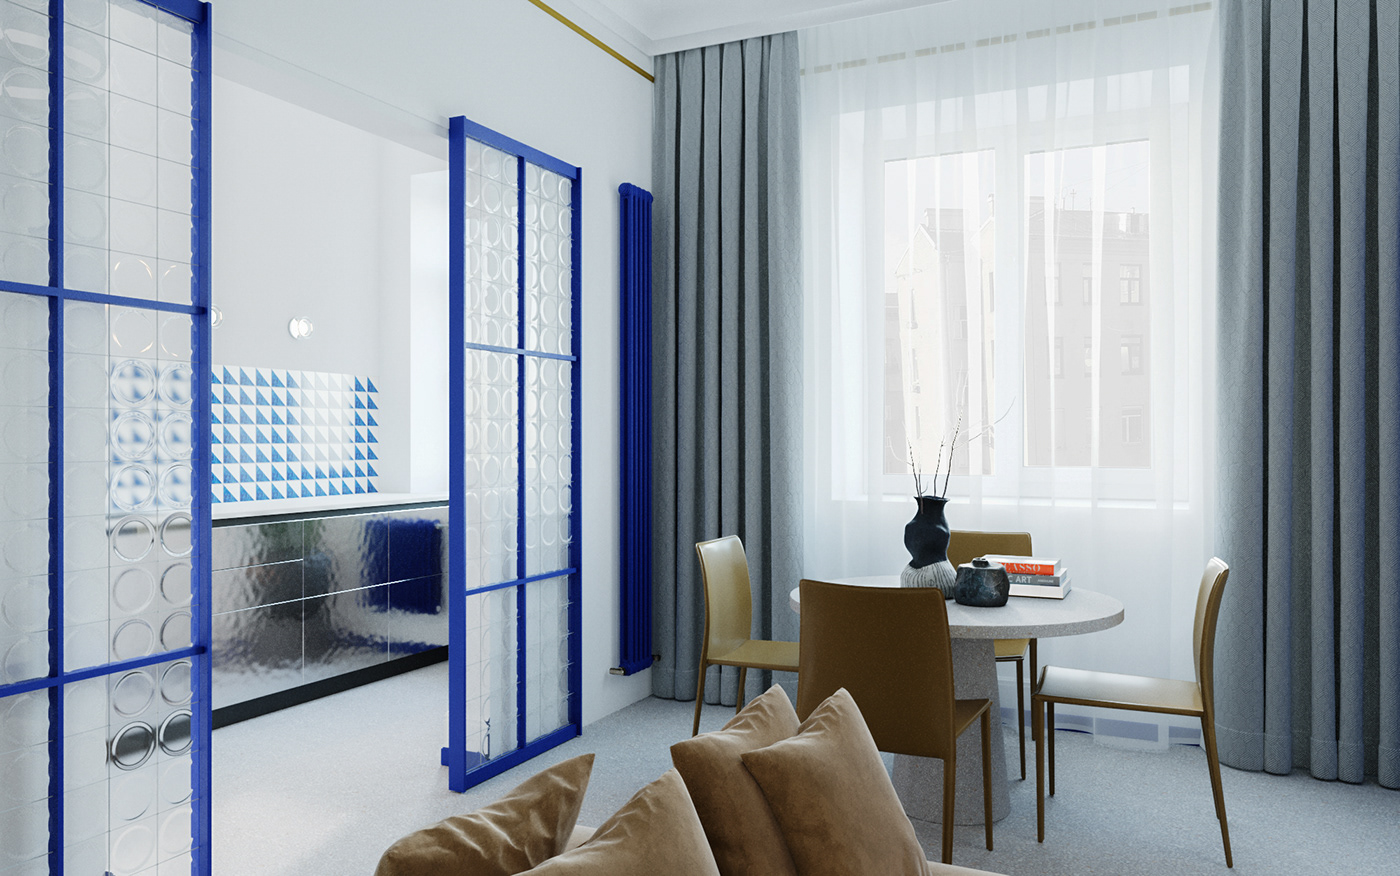 3dmodeling 3dsmax architecture bedroom Interior interior design  kitchen living room Render visualization